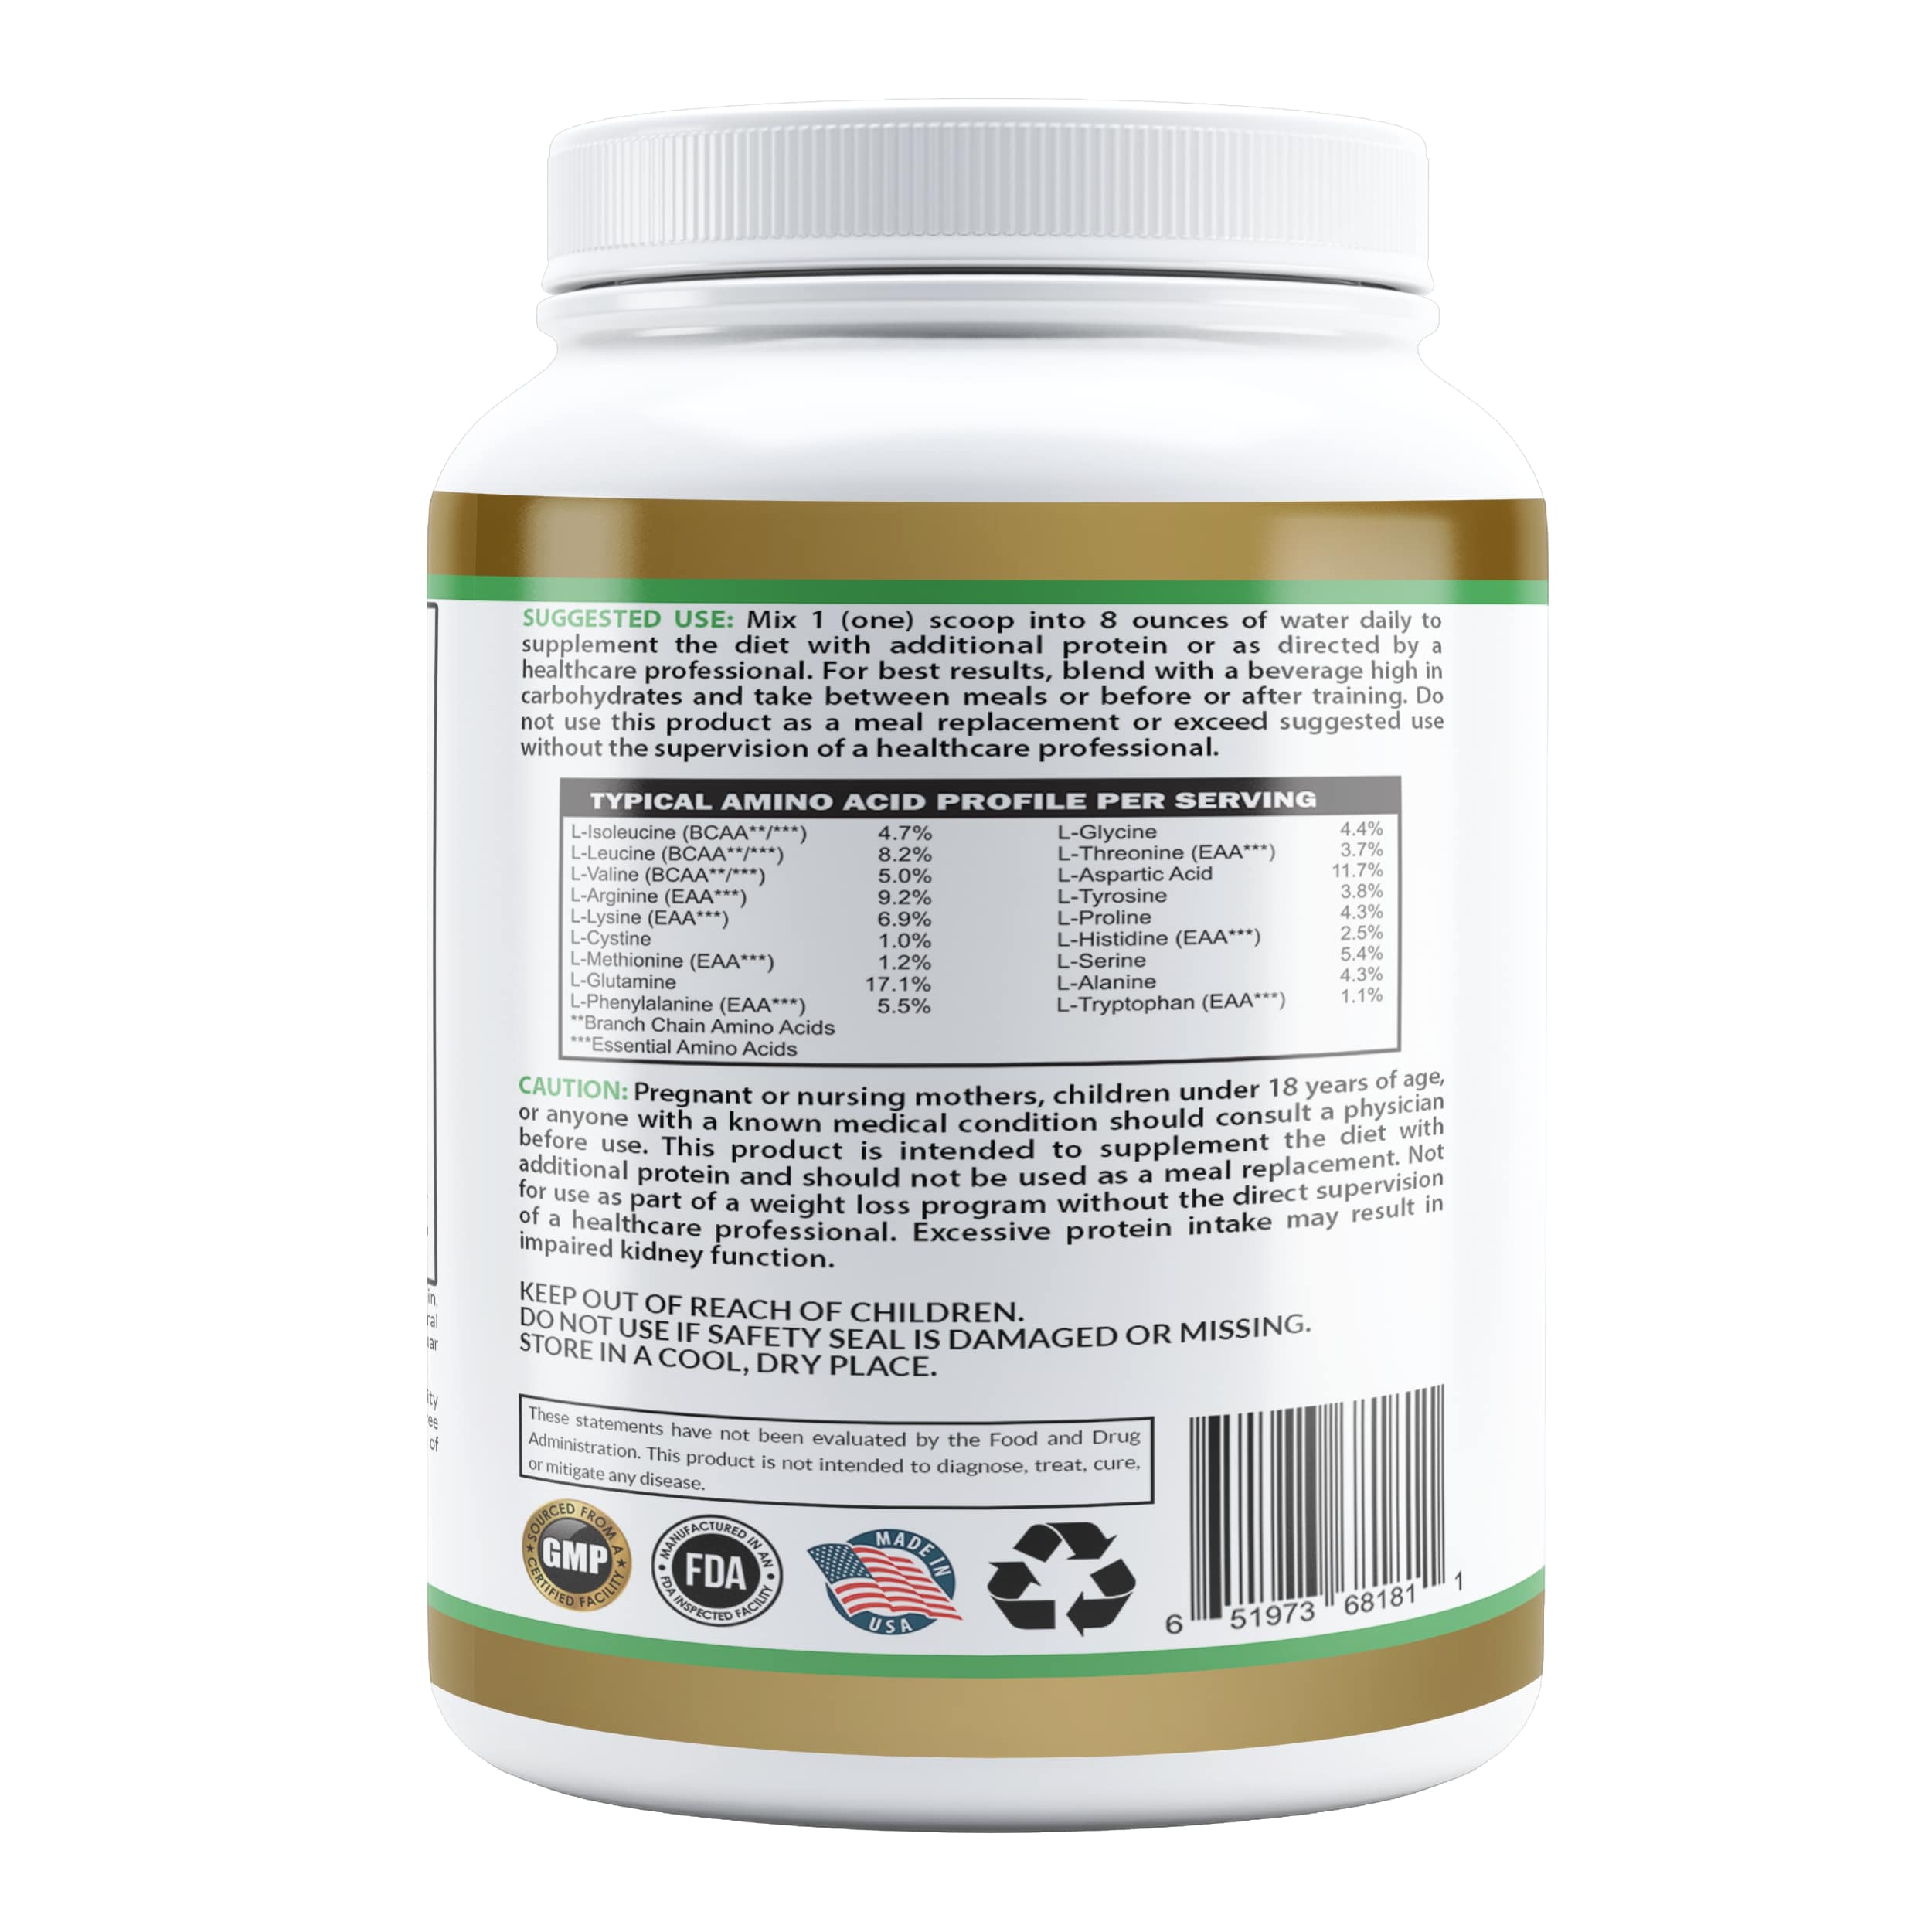 QVP01/02A - 素食蛋白粉